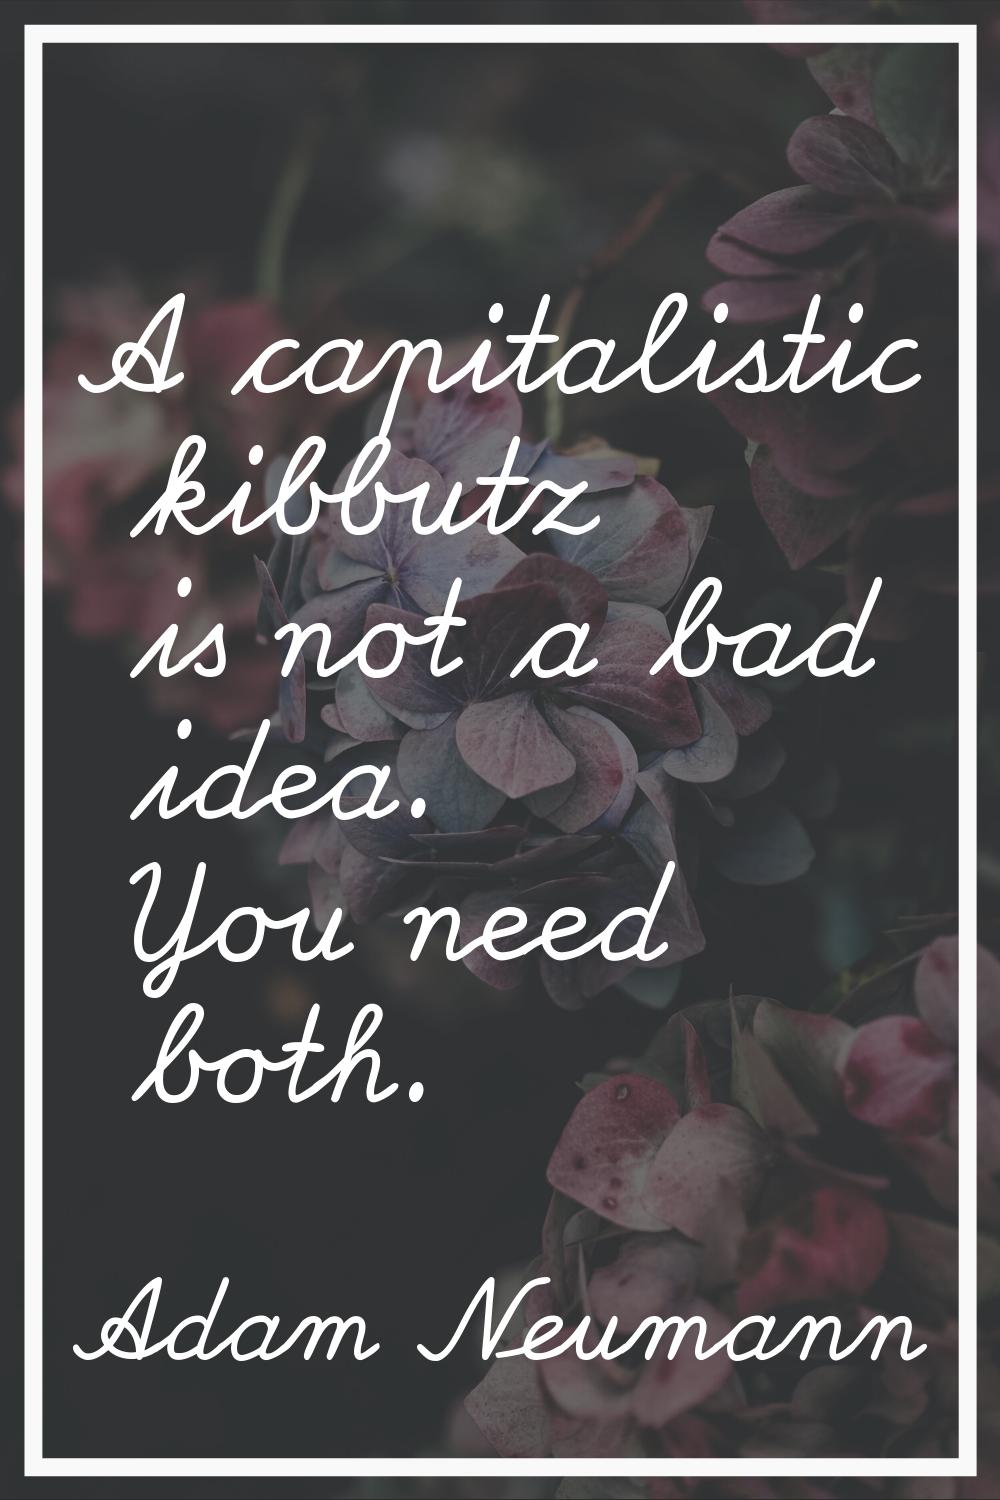 A capitalistic kibbutz is not a bad idea. You need both.